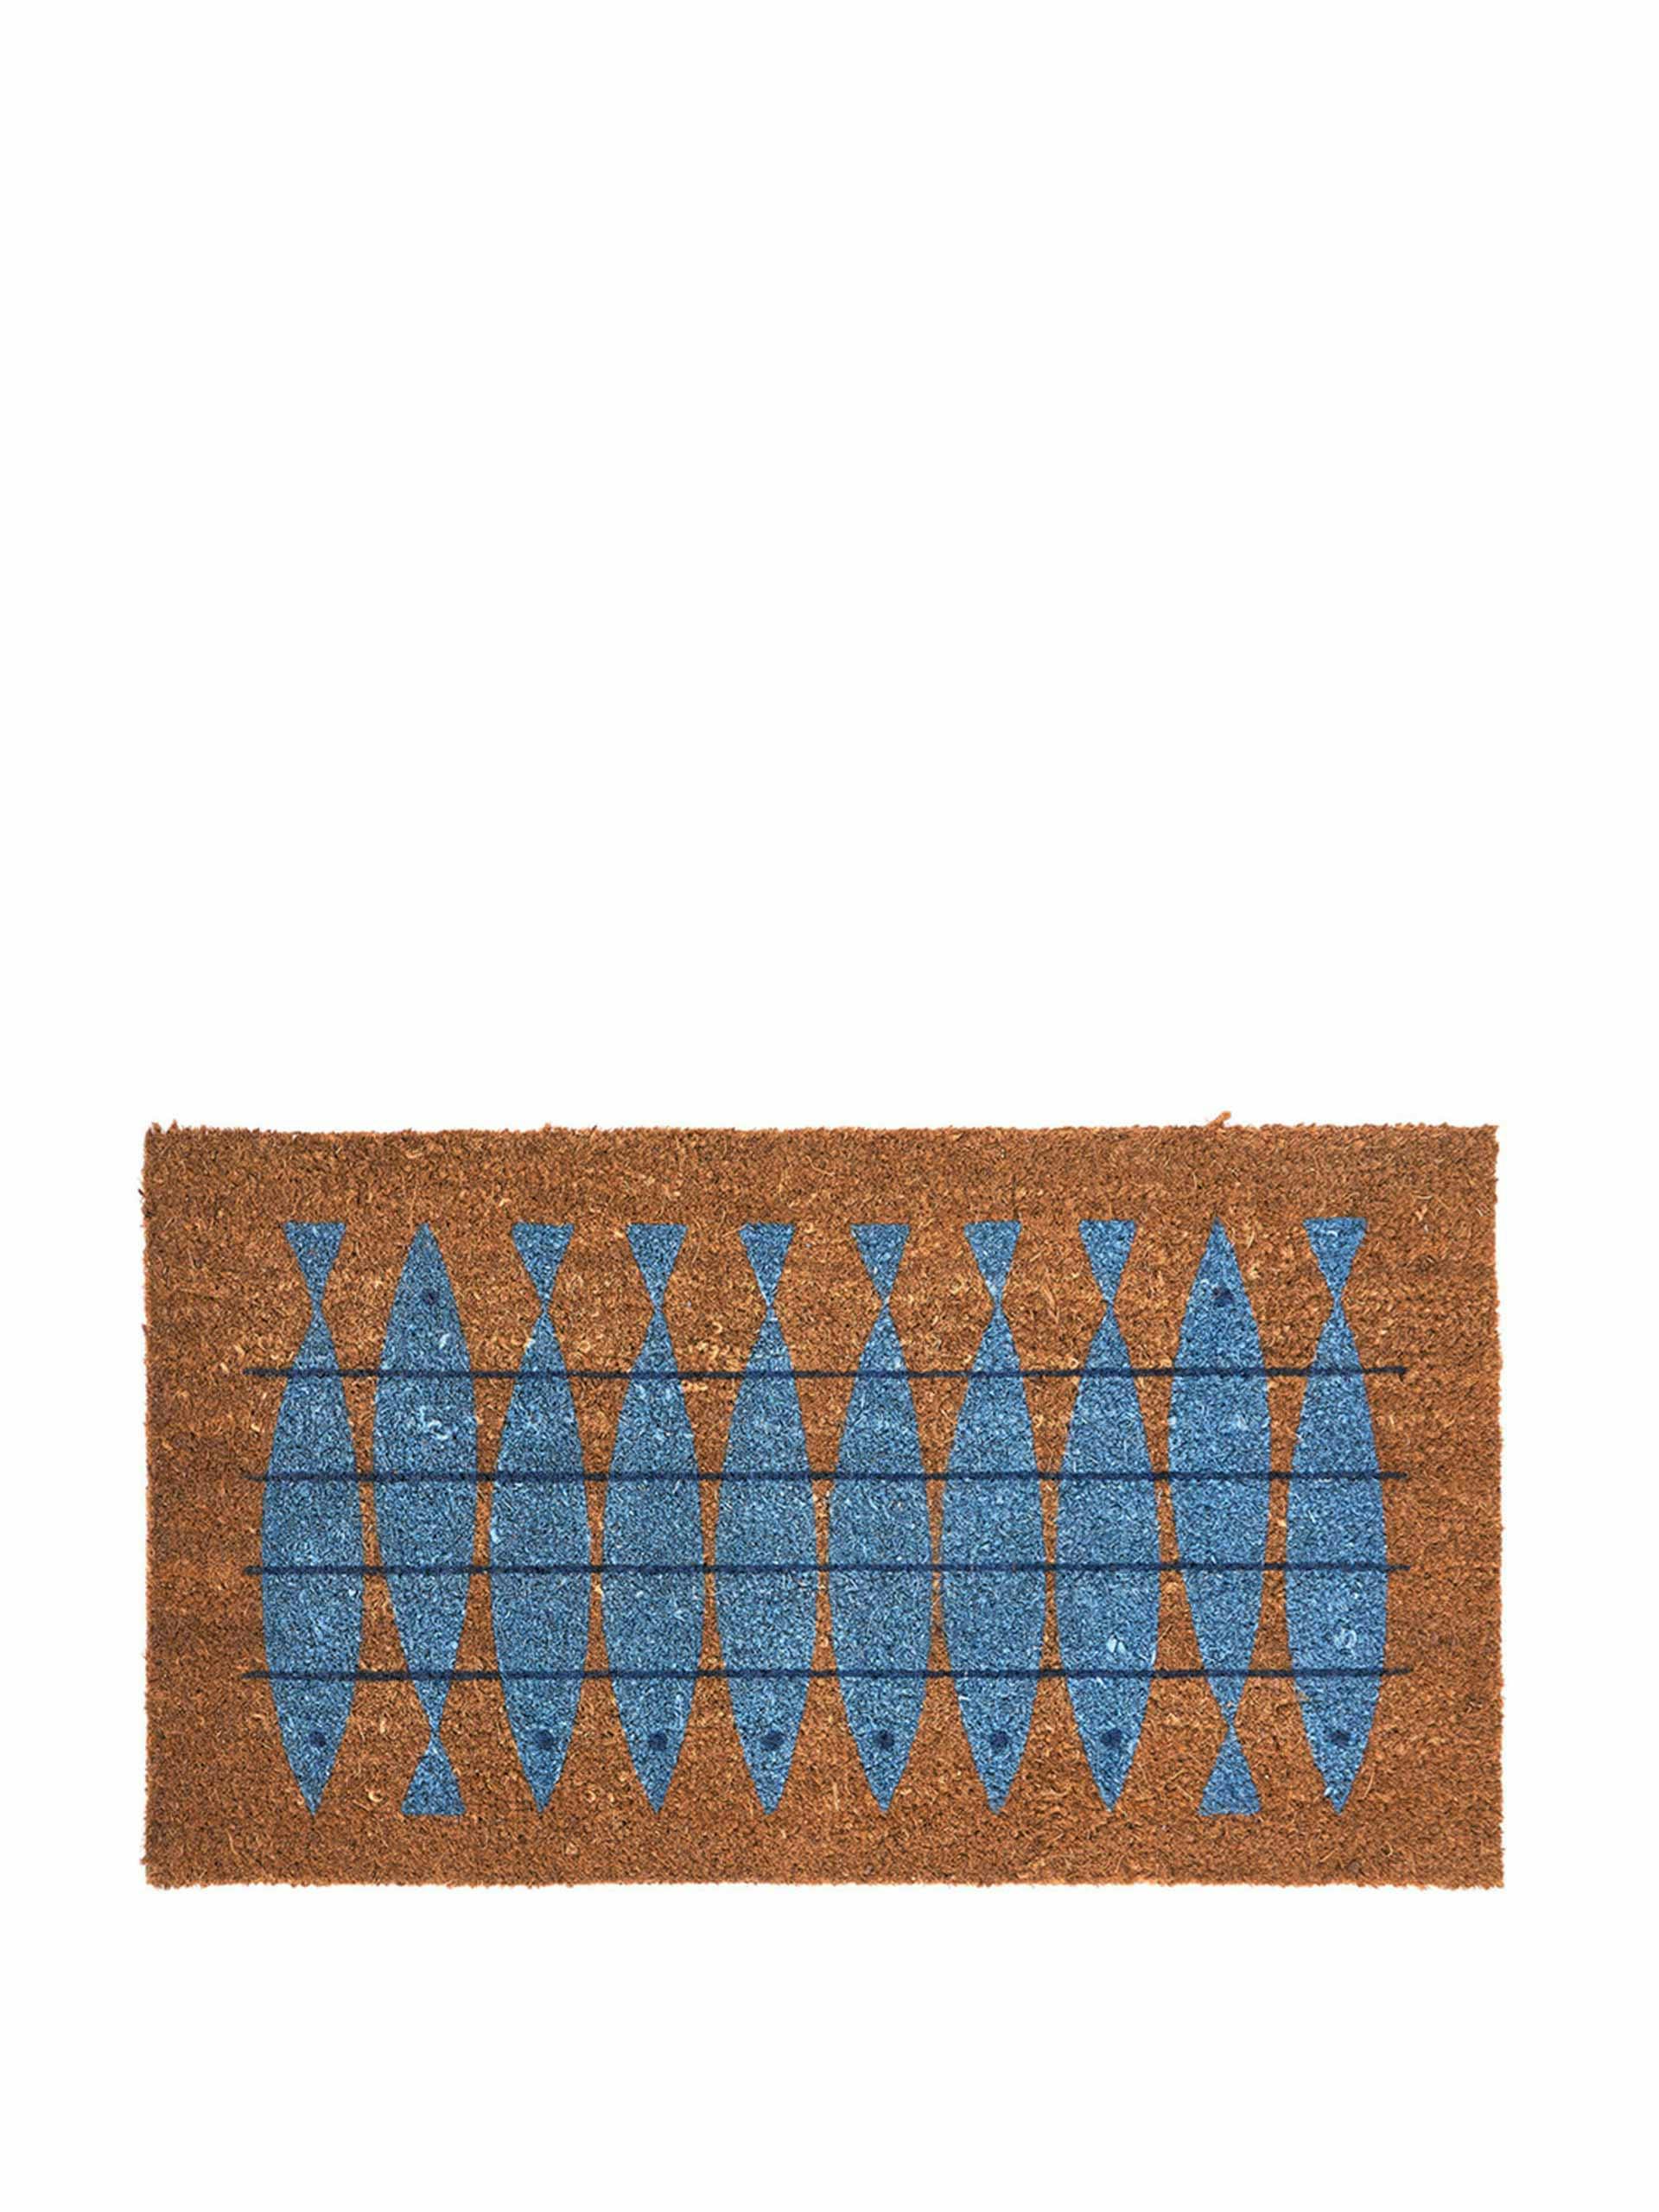 Shoal of fish doormat